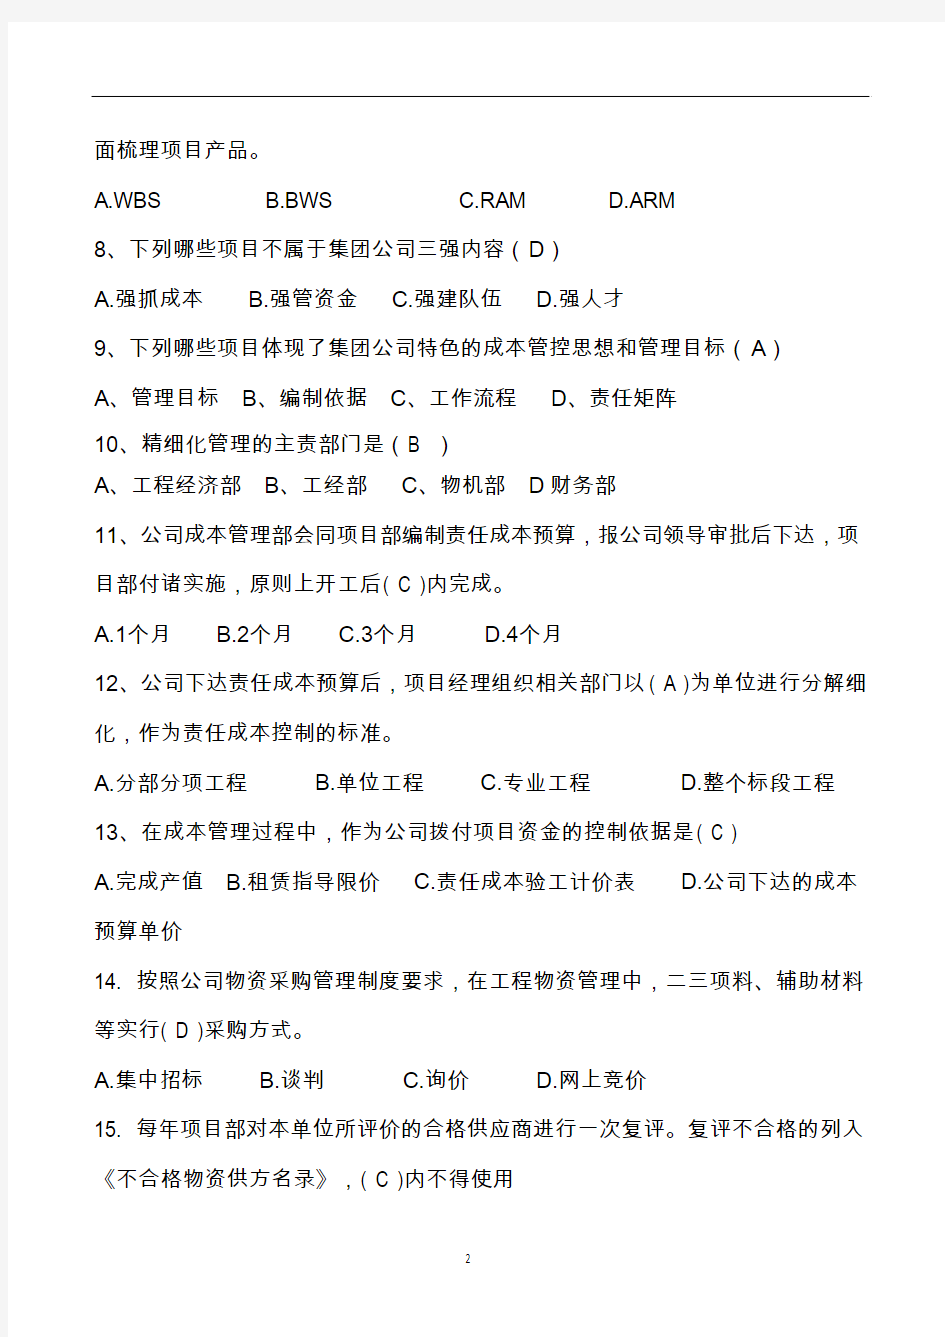 中国中铁精细化考试试卷、答案